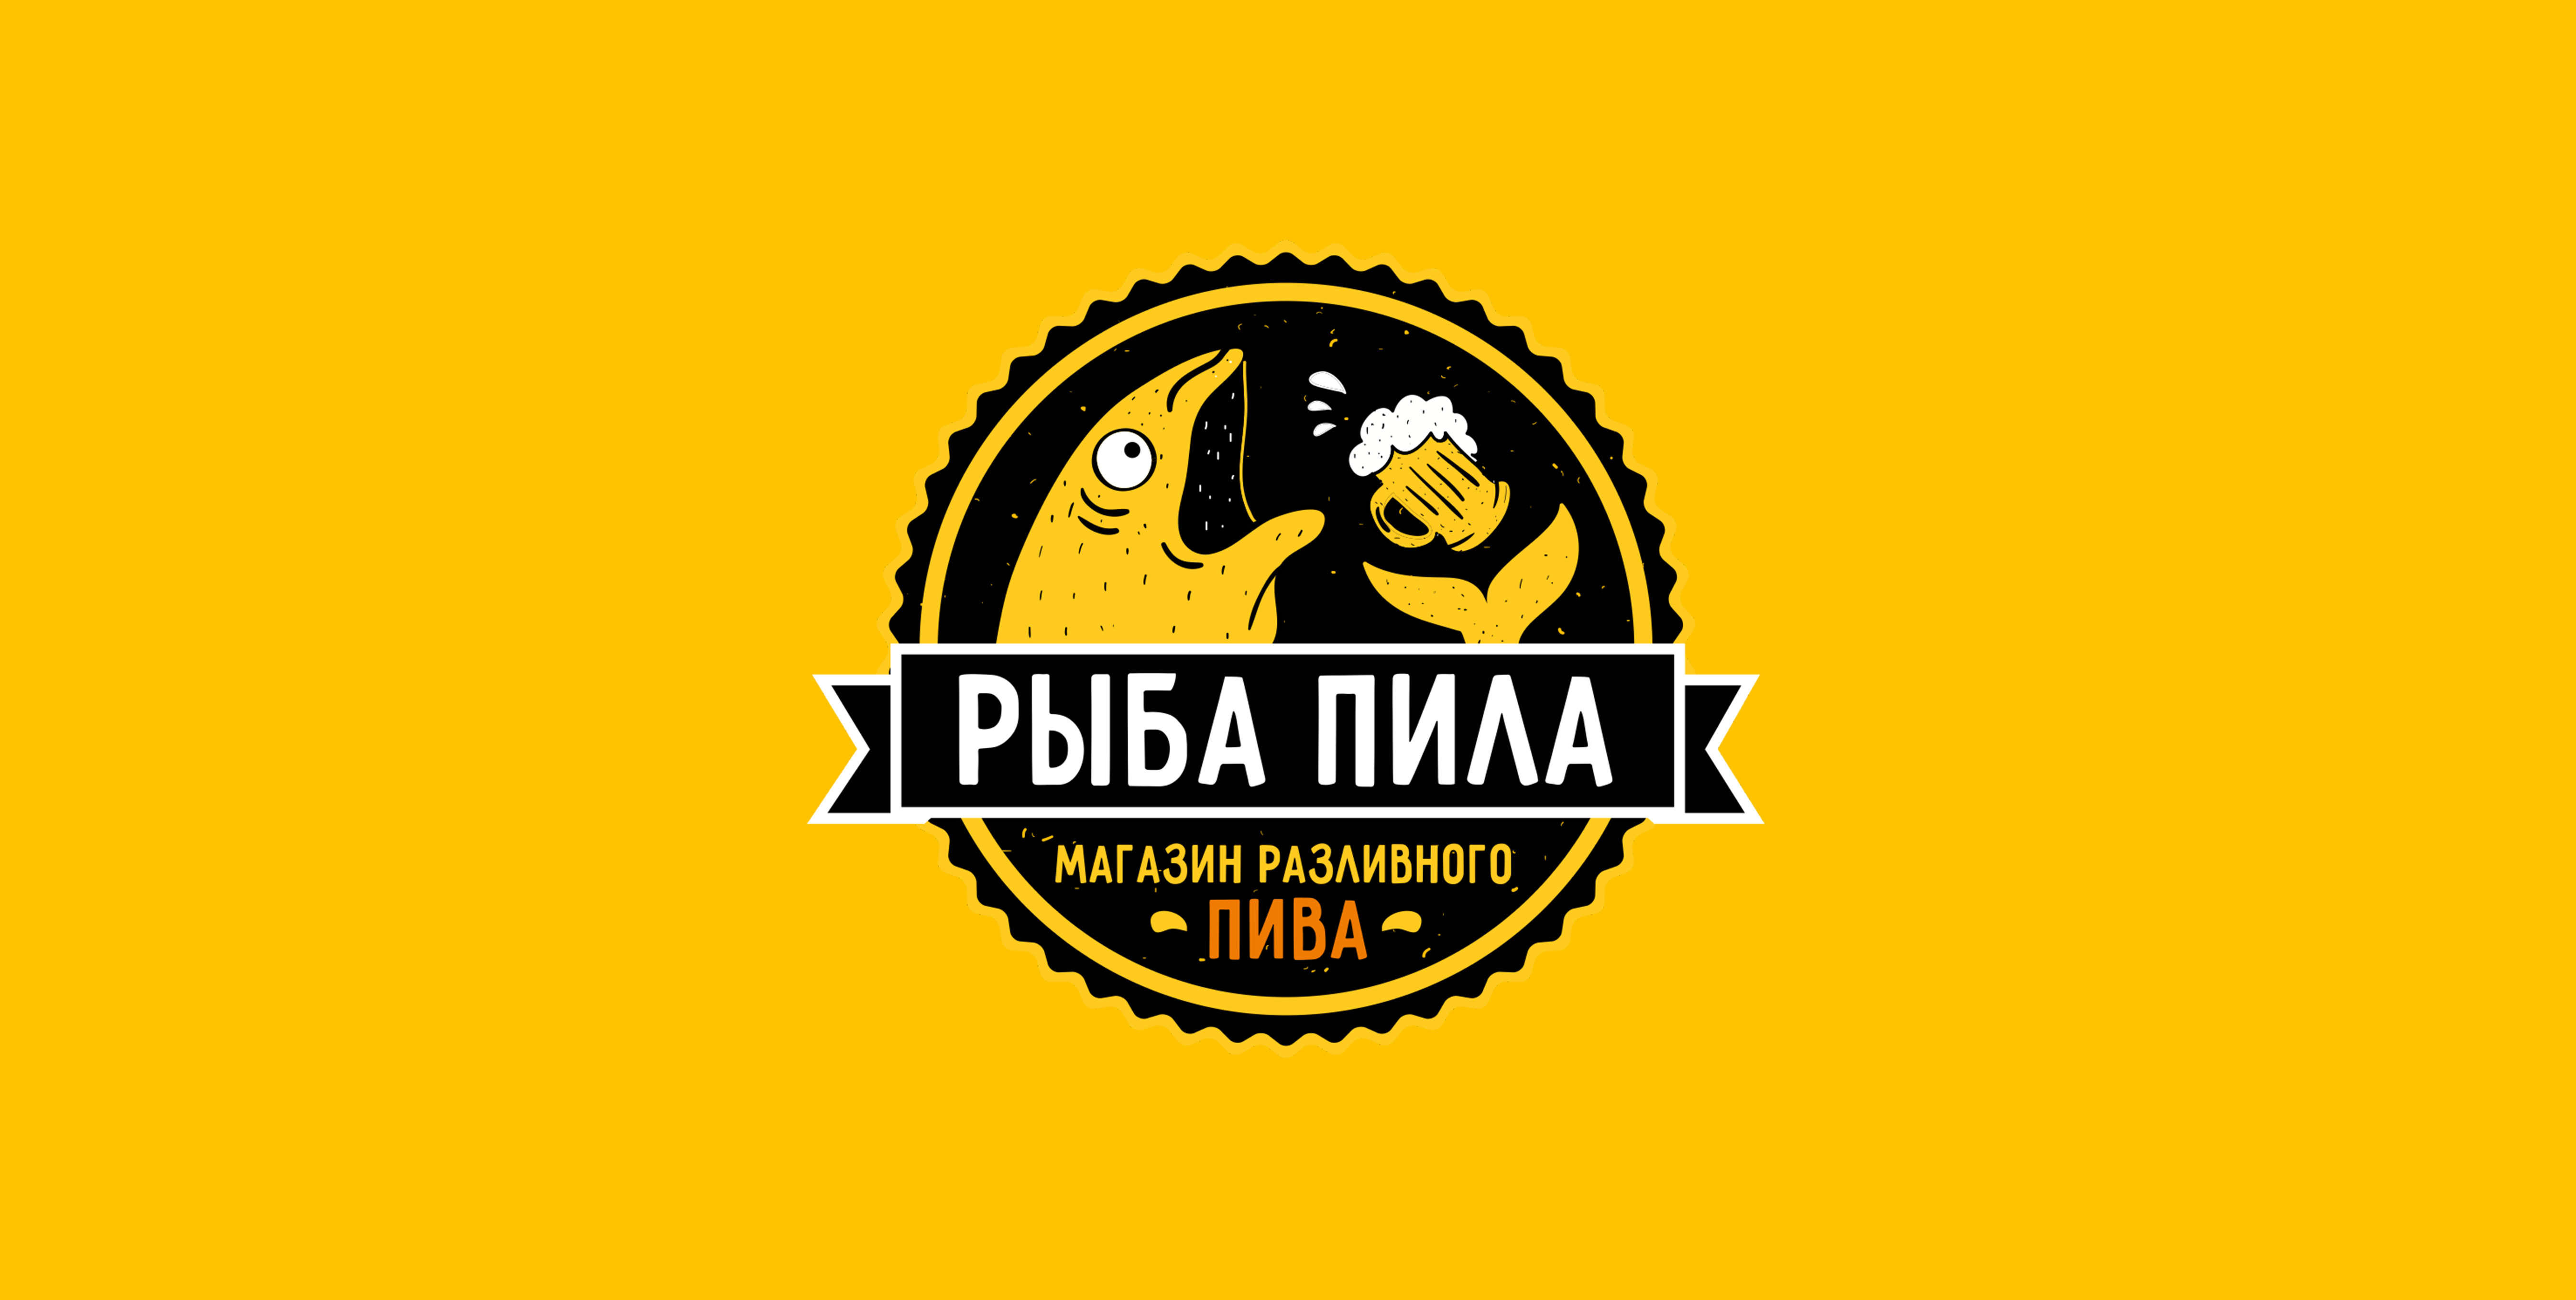 Рыба пьет пиво. Логотип пивного магазина. Логотипы пивных магазинов.